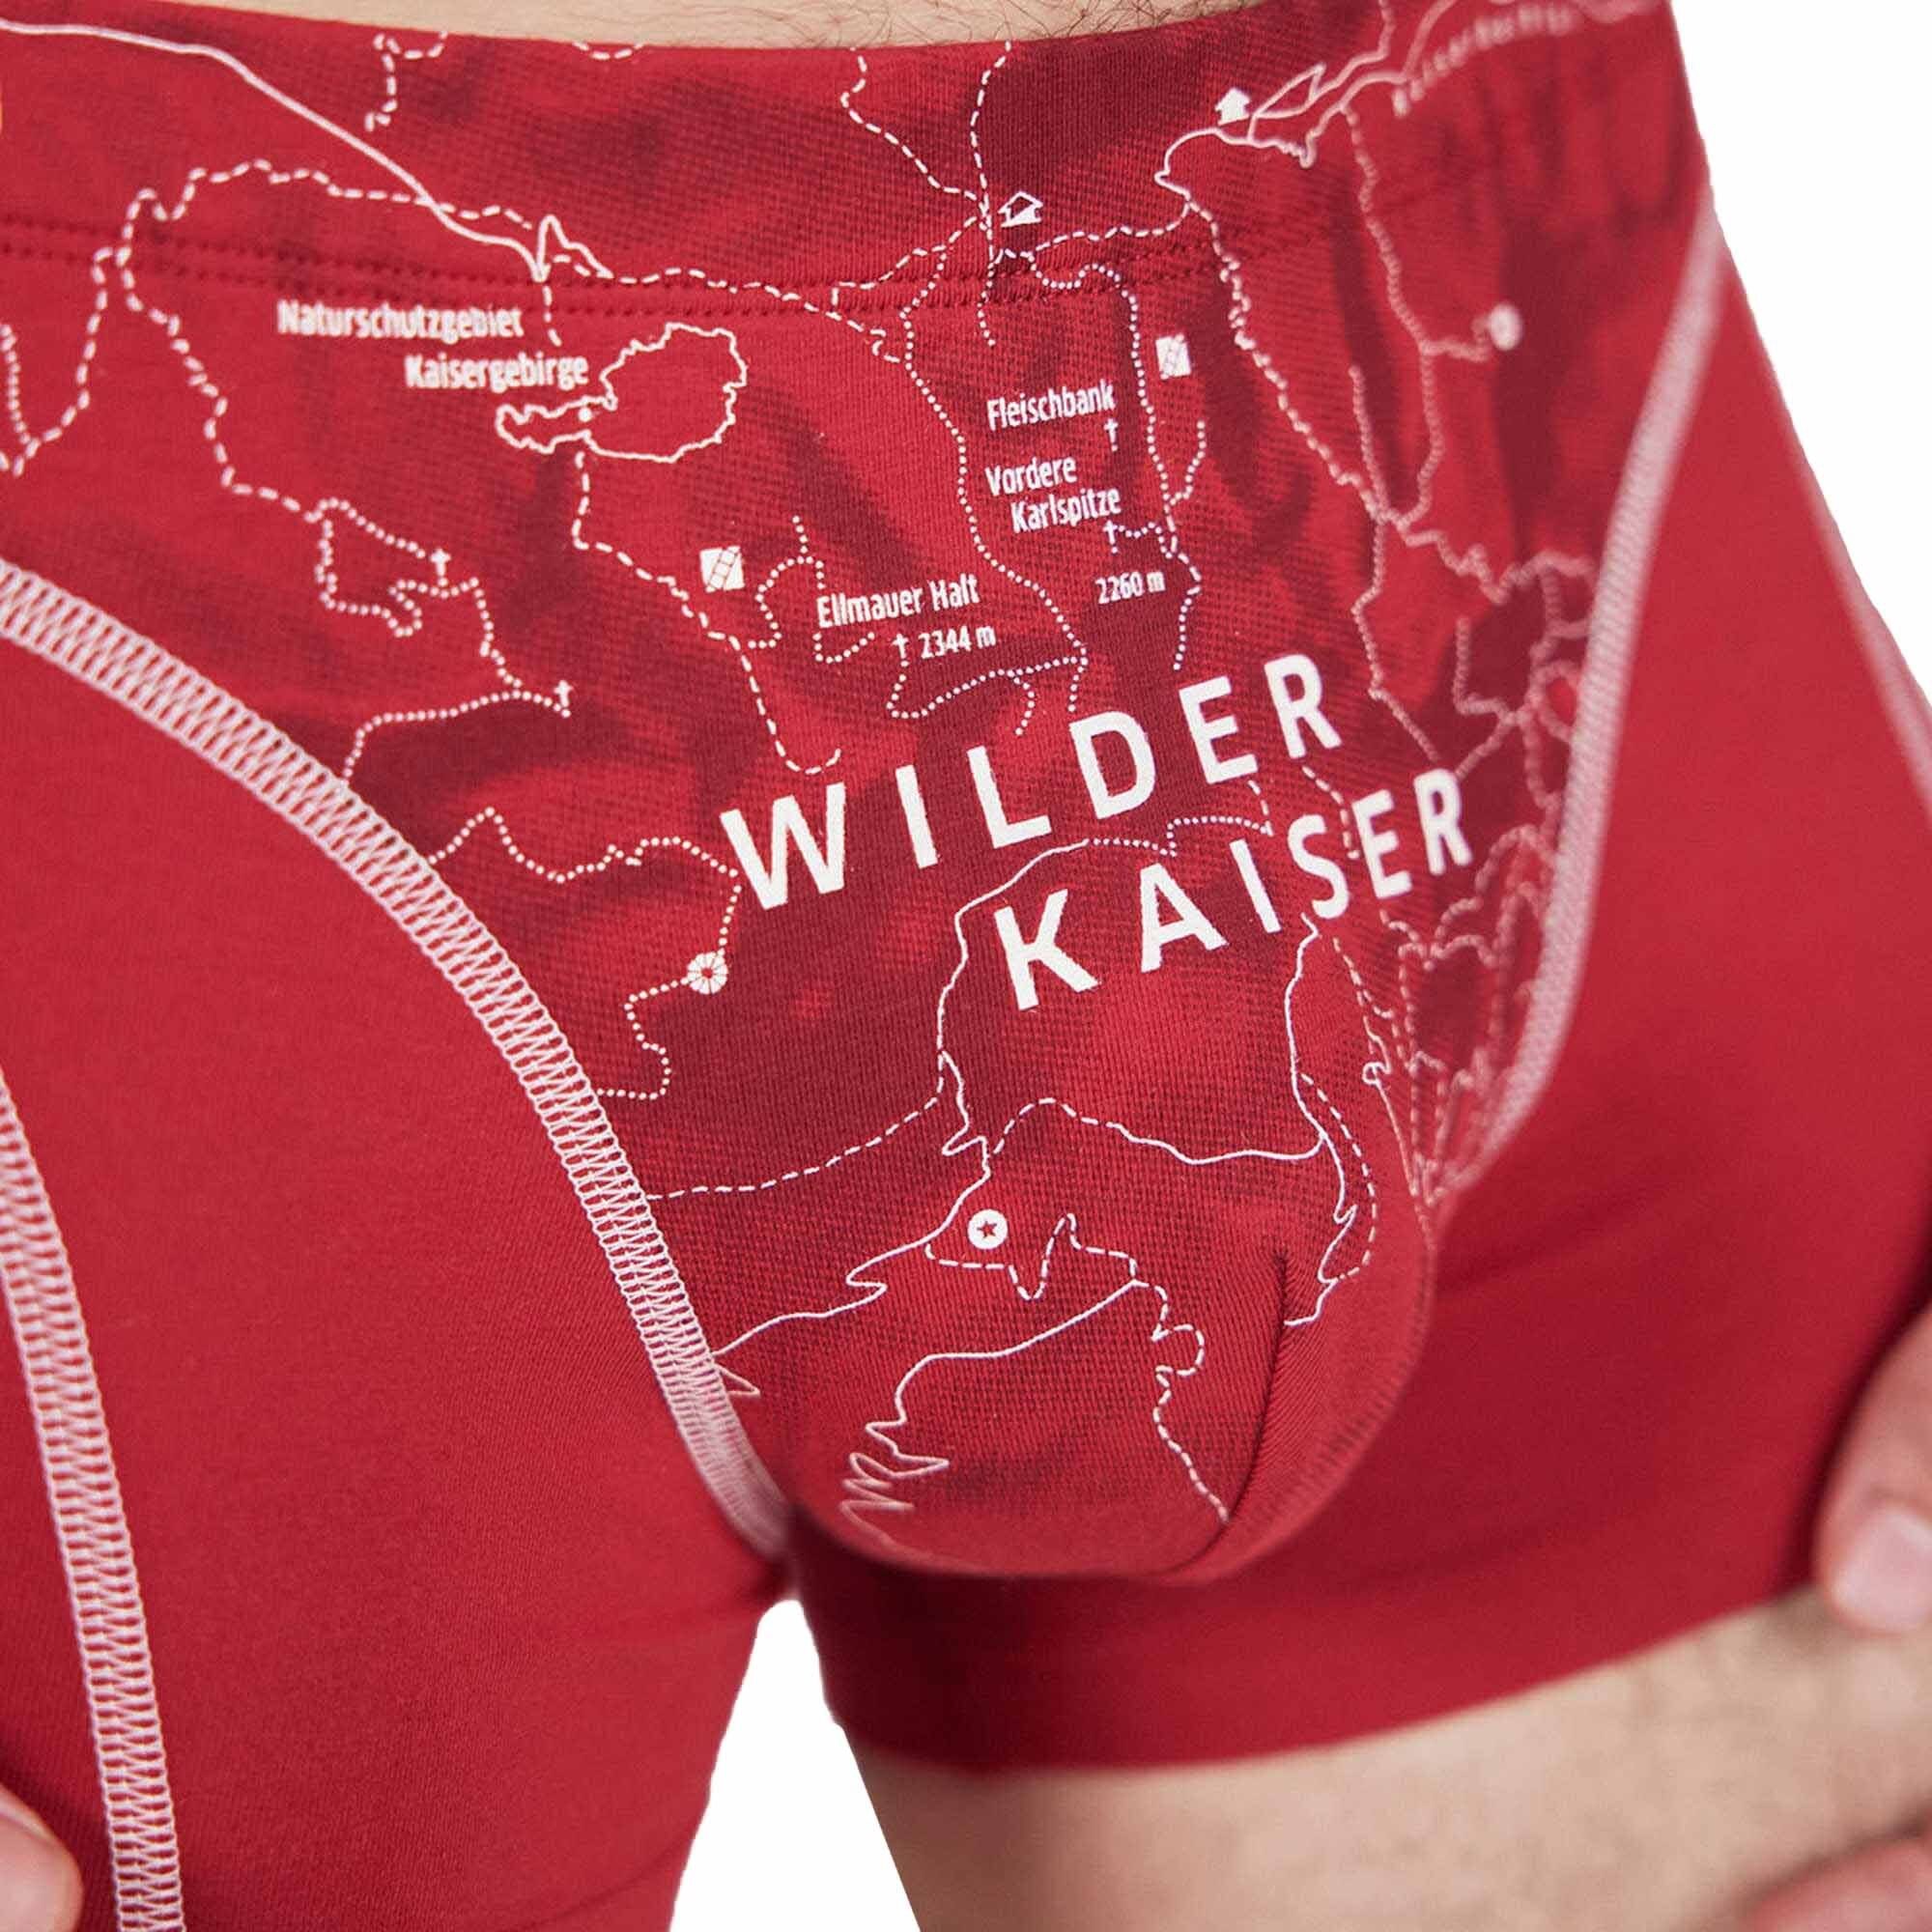 Ein schöner Fleck Erde Bio-Baumwolle Herren Boxershorts Shorts, Kaiser Print, Wilder - Boxer (Kaminrot)